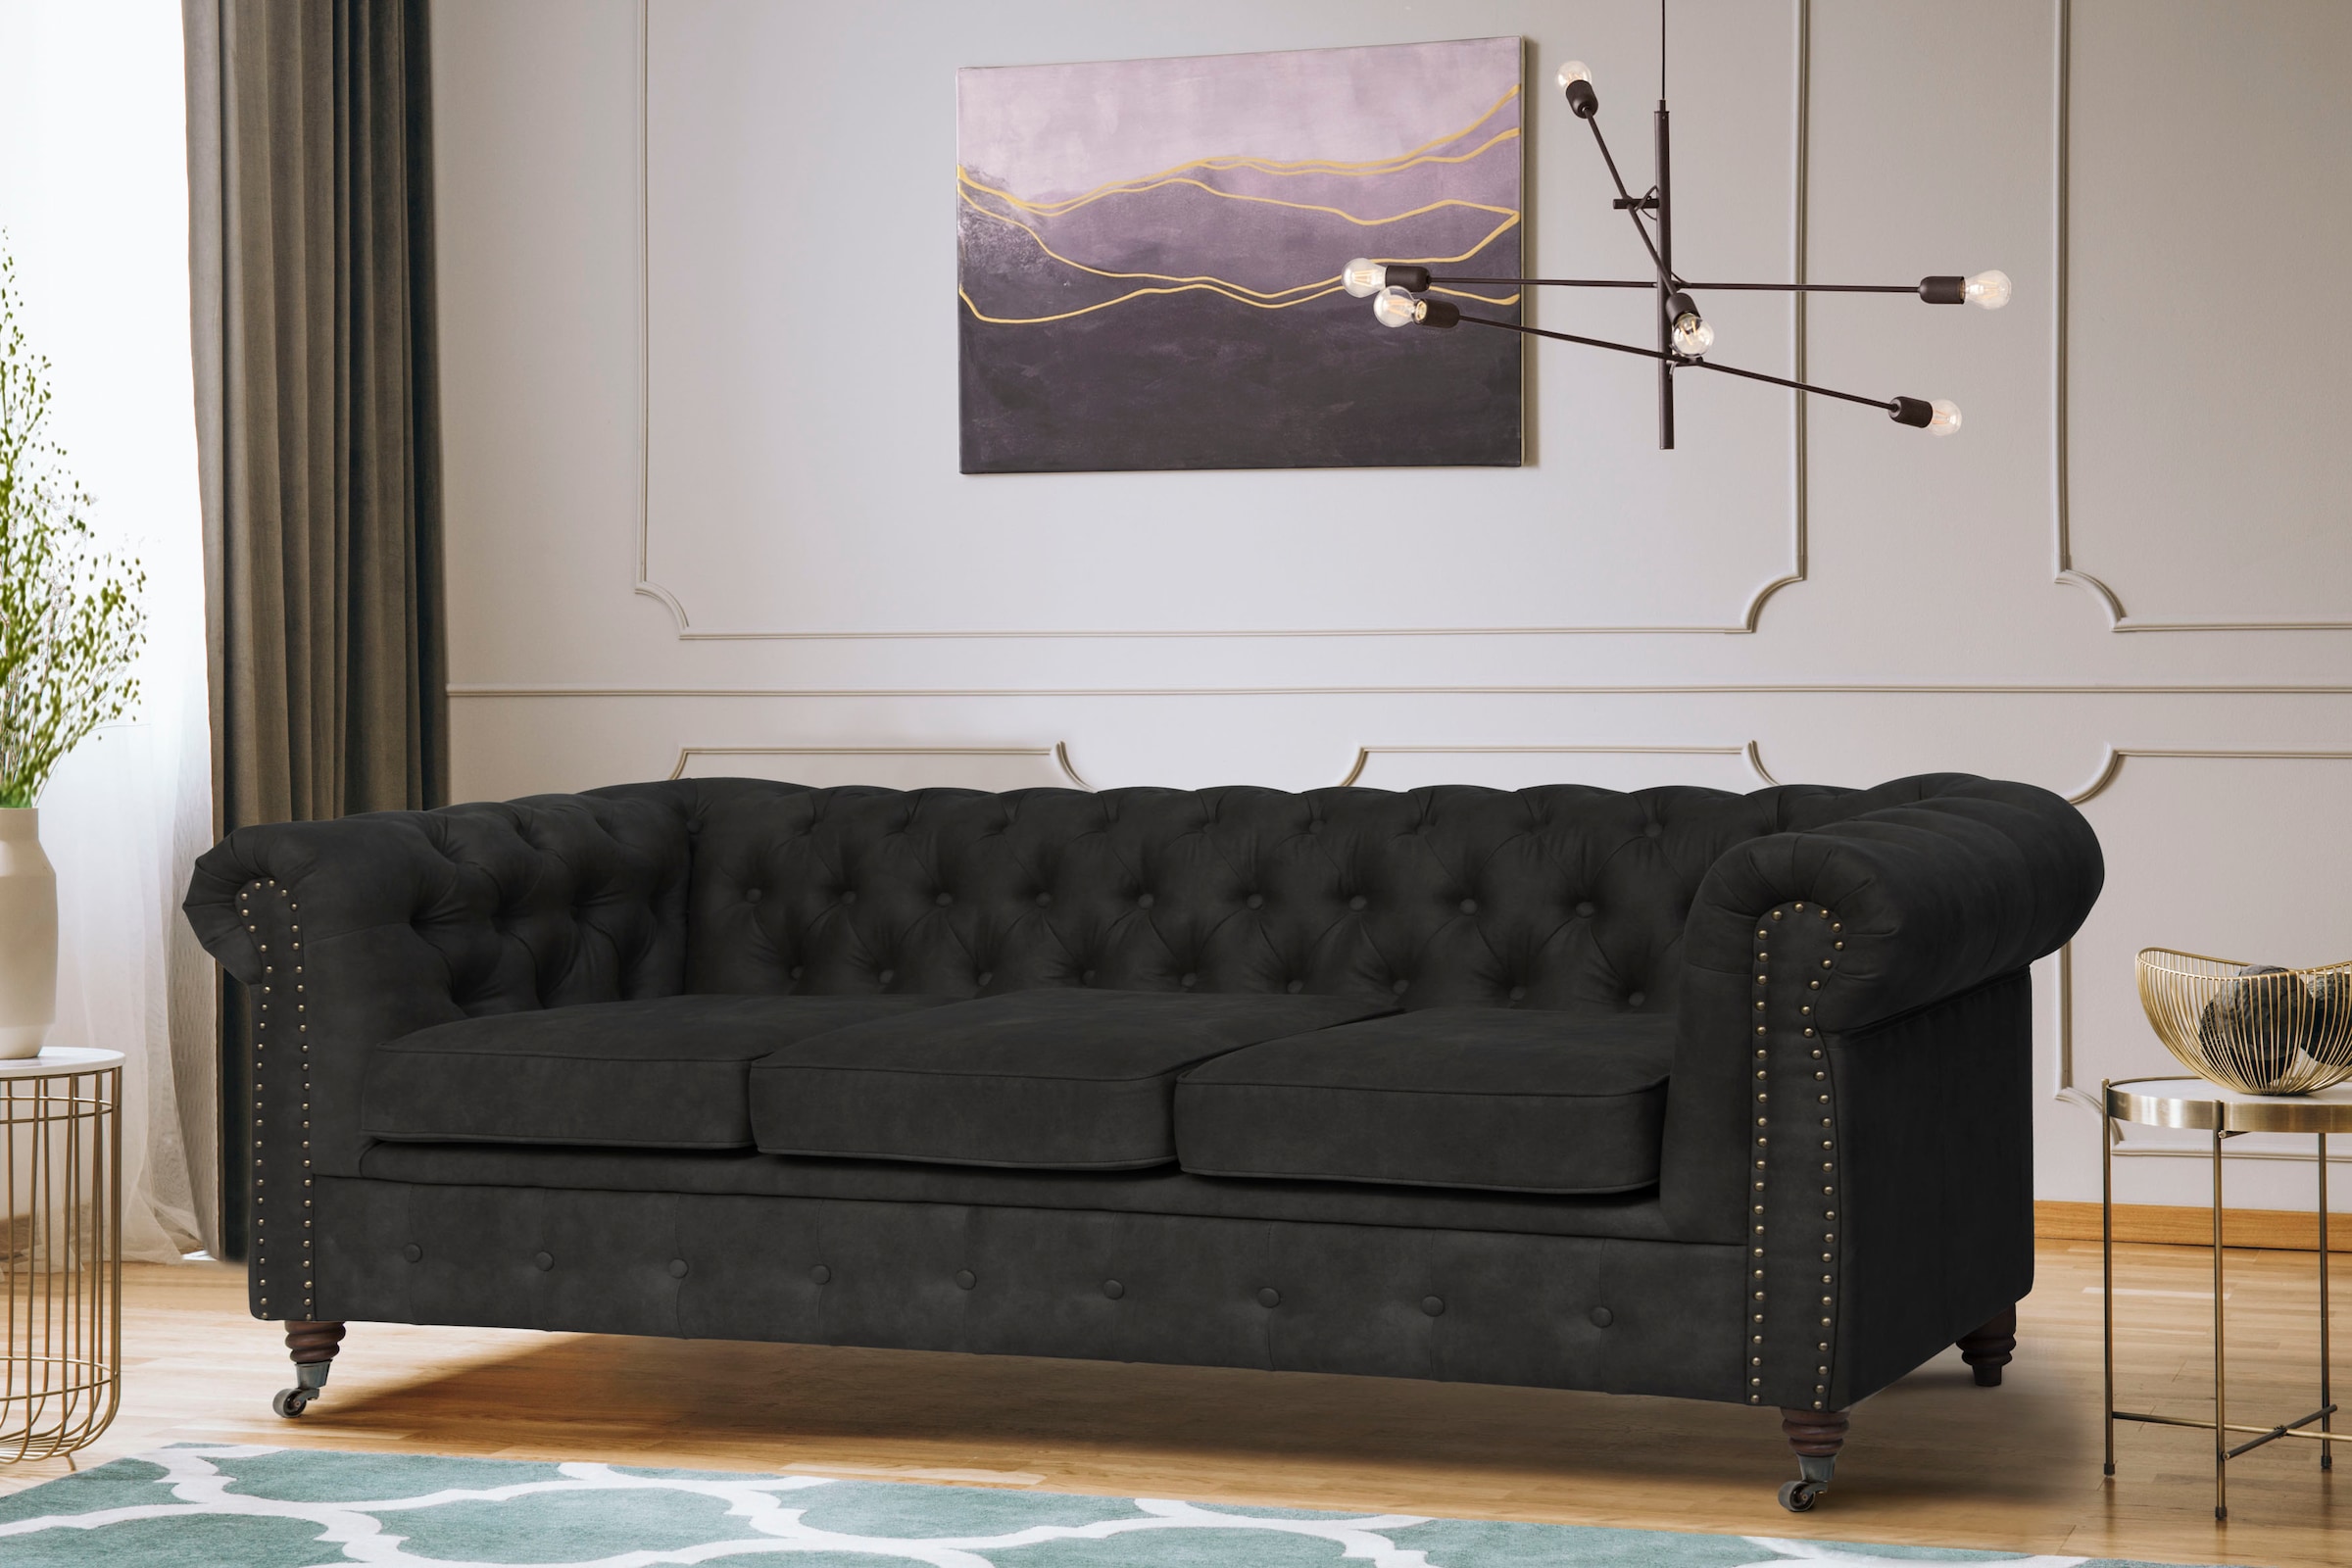 Home affaire Chesterfield-Sofa »Aarburg«, aufwändige Knopfheftung und Ziernägel im Chesterfield-Design